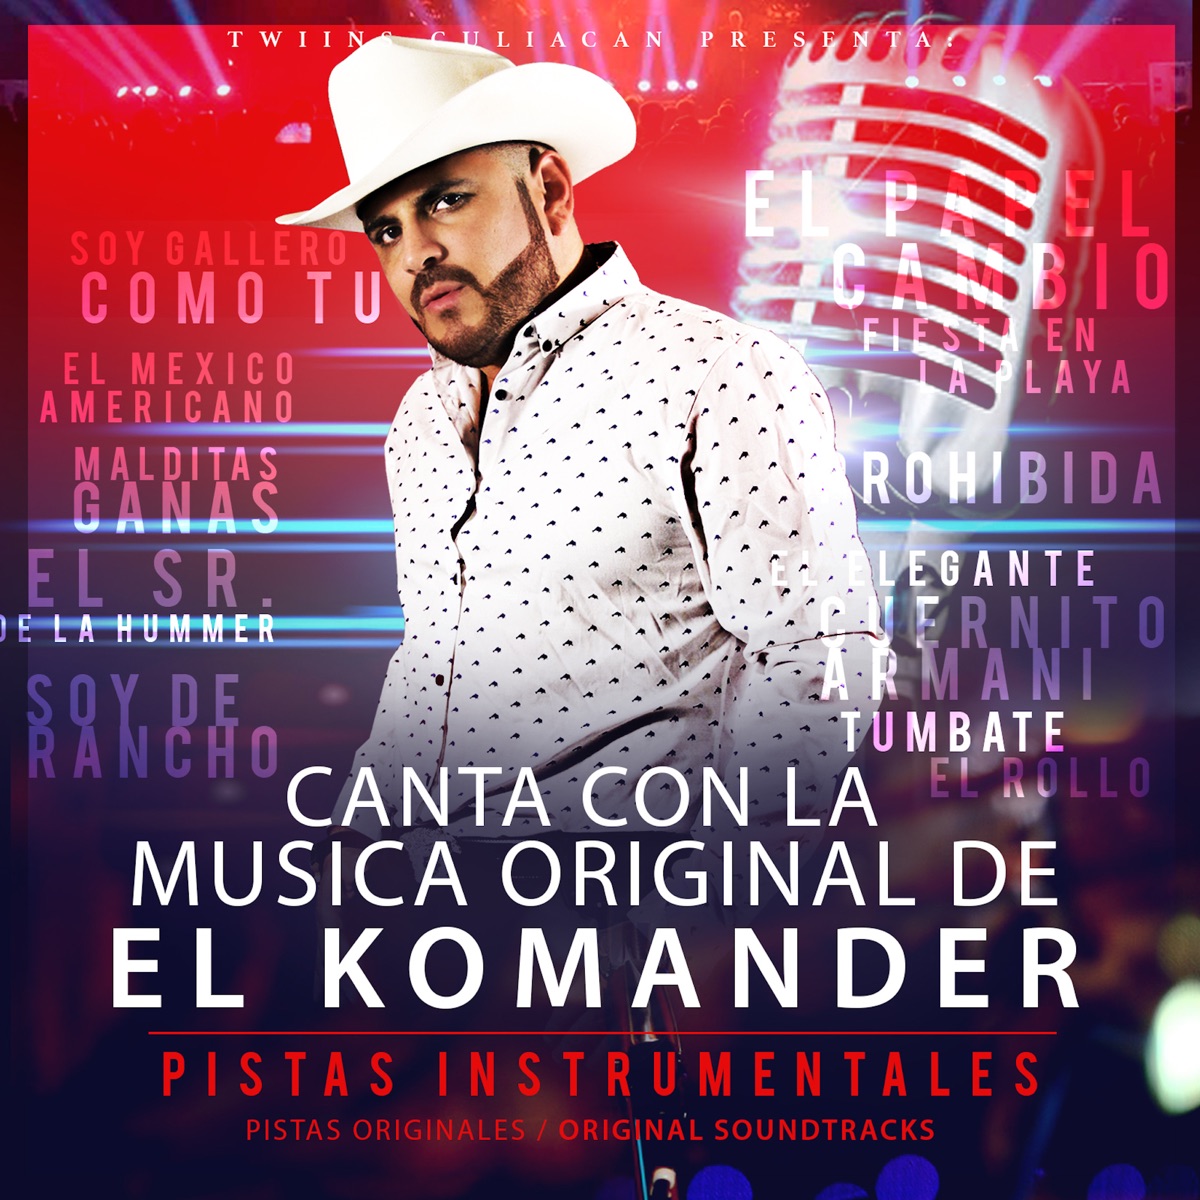 Canta Con La Música Original De El Komander - Album by El Komander - Apple  Music